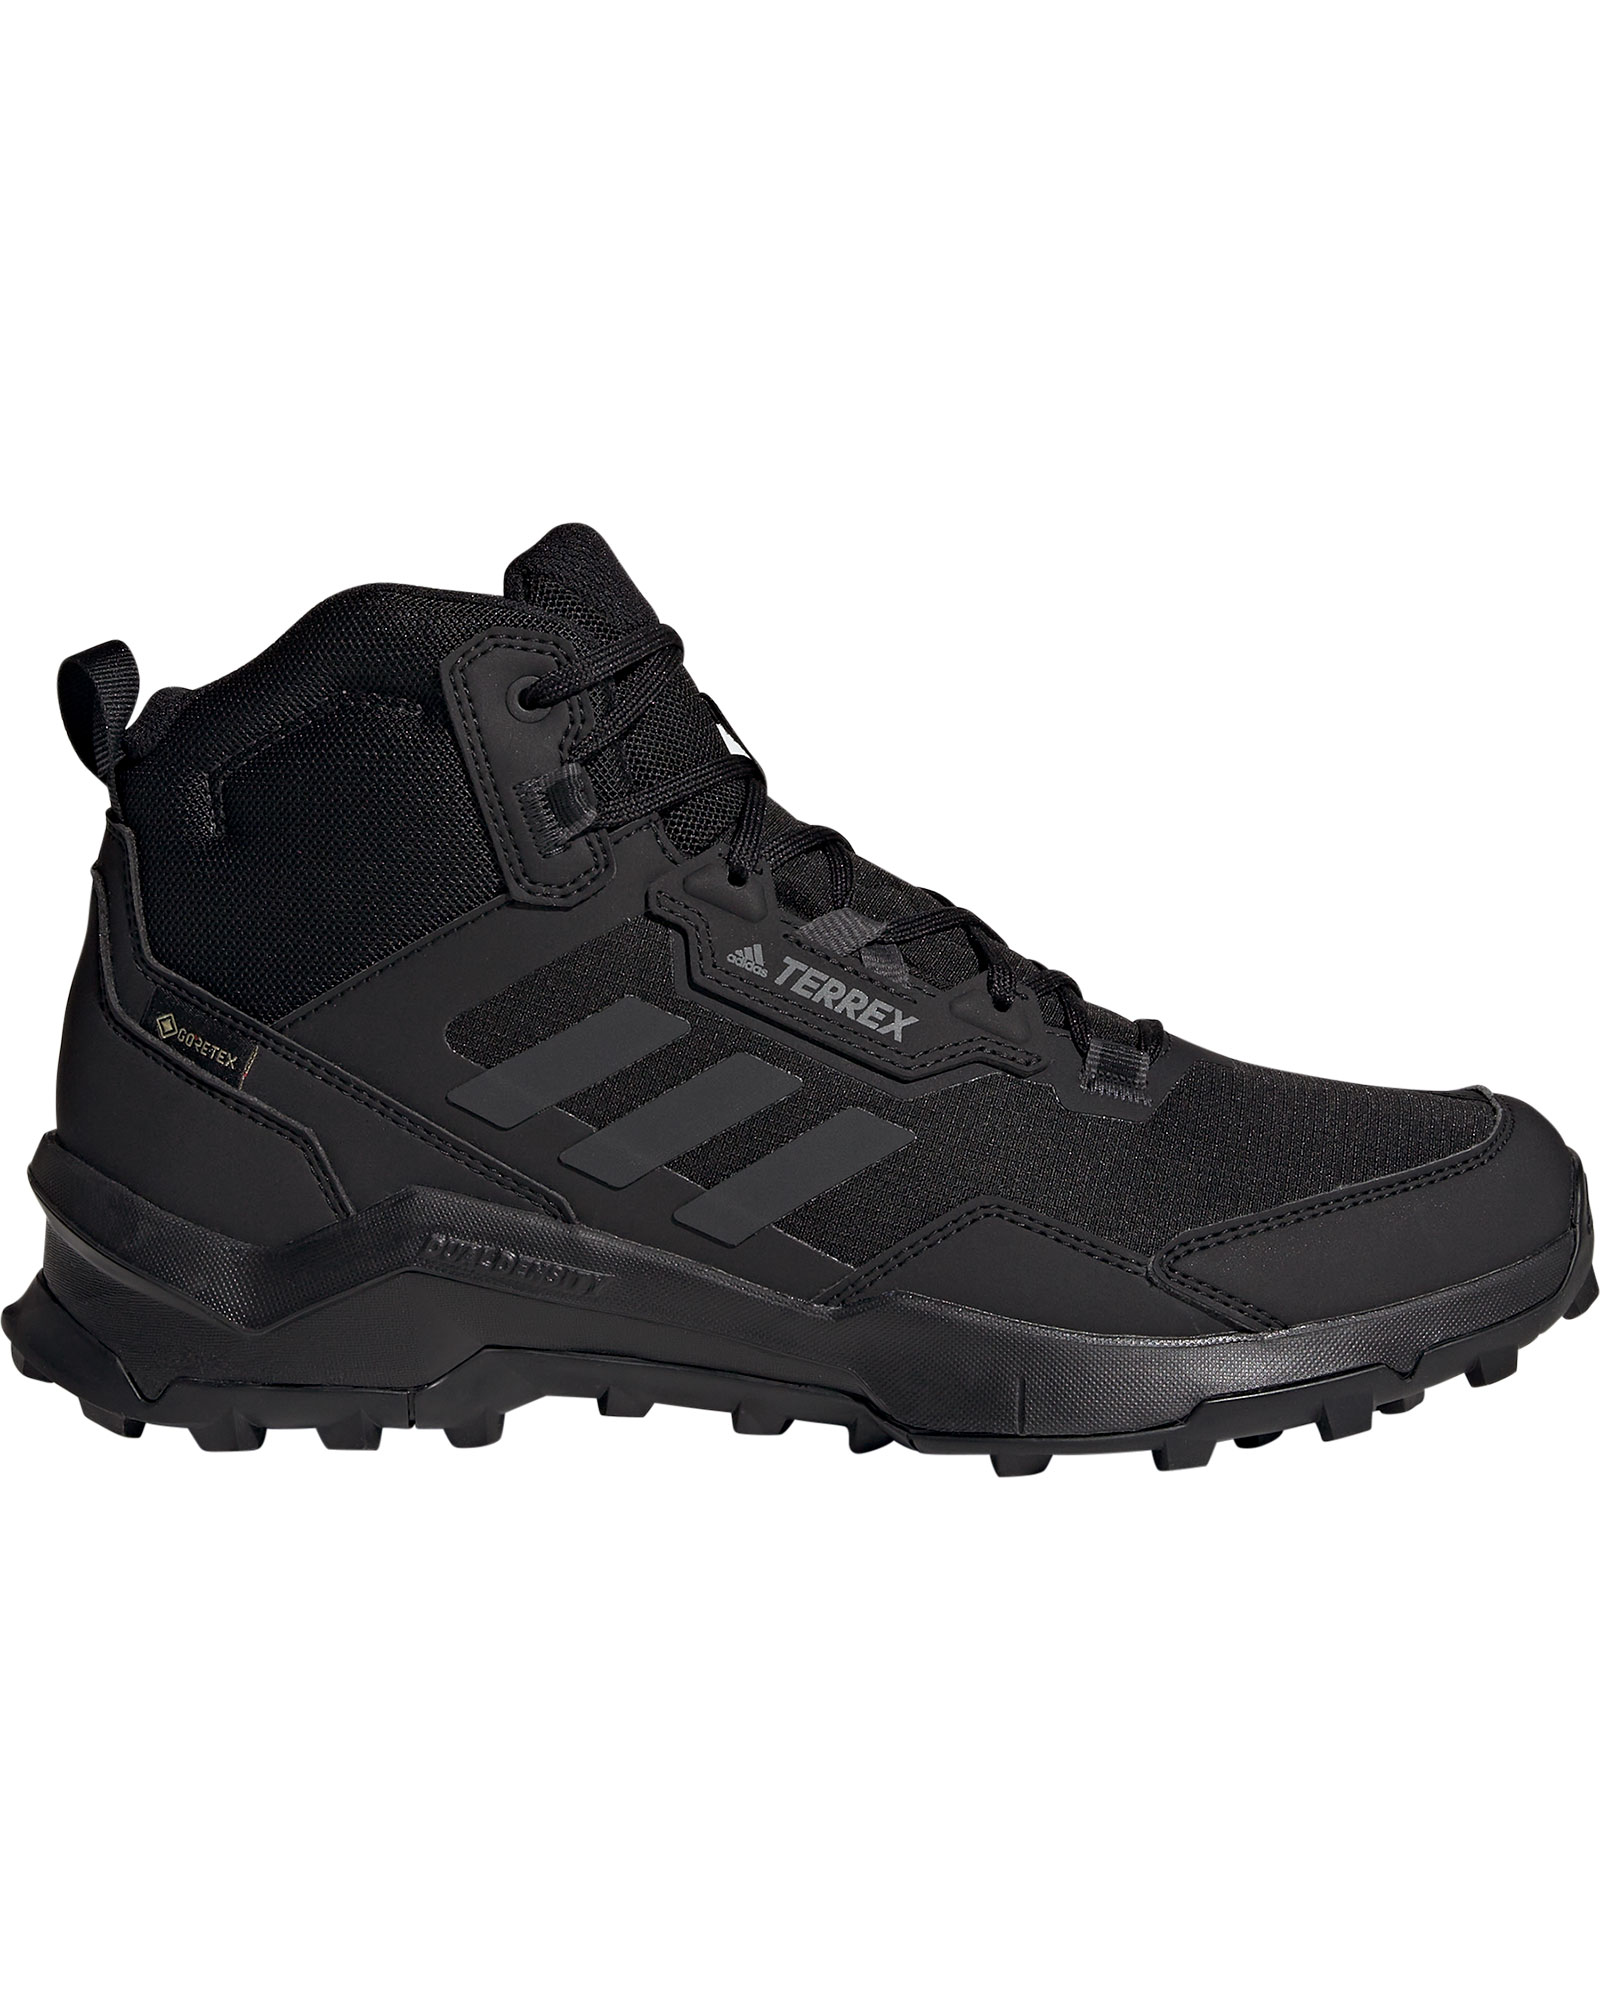 adidas TERREX AX4 Mid GORE TEX Men’s Boots - Core Black/Carbon/Grey Four UK 8